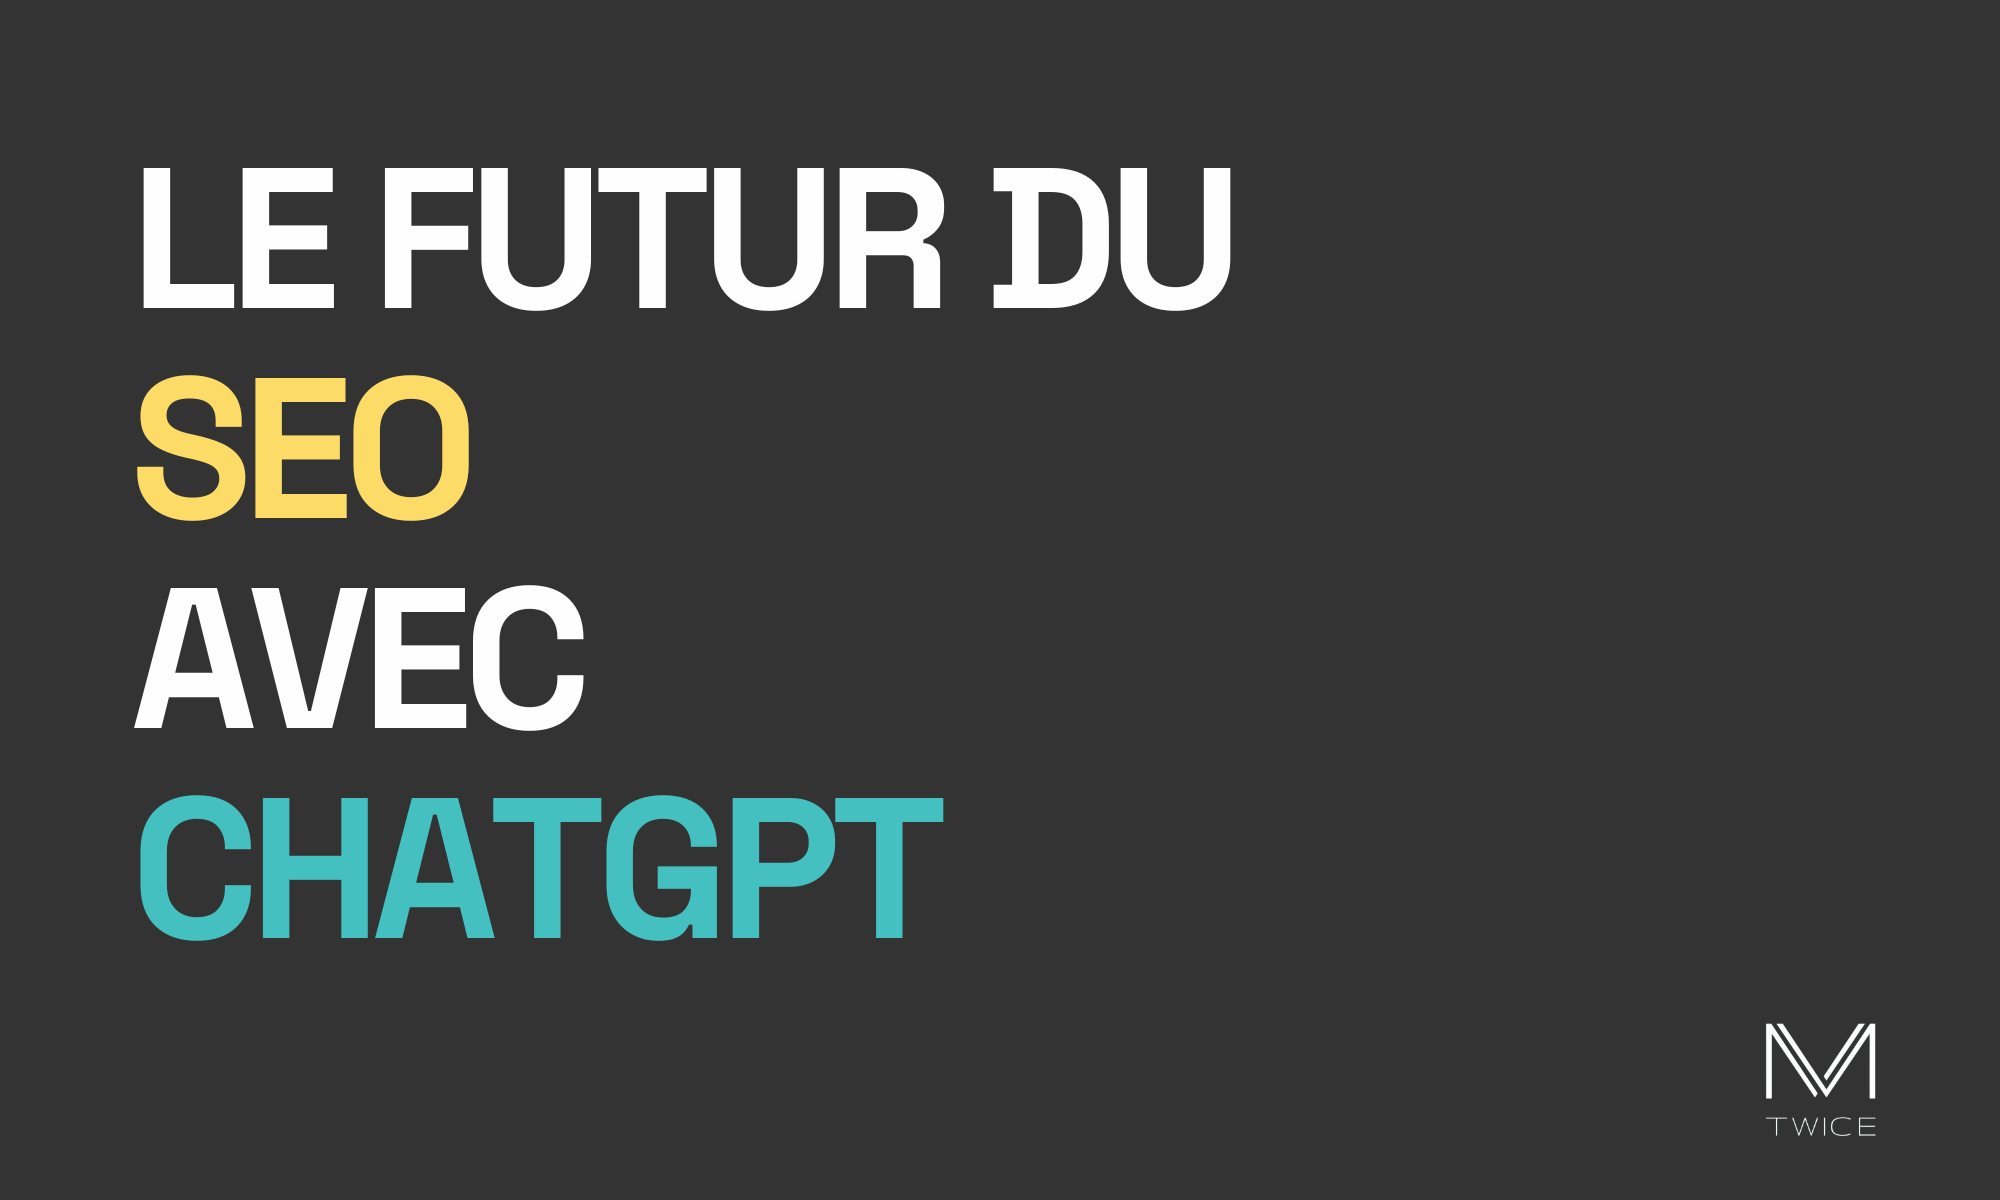 Image de couverture sur fond noir et lettres blanches de l'article de blog 'Le futur du SEO avec ChatGPT' avec le logo de M-TWICE en bas à droite.